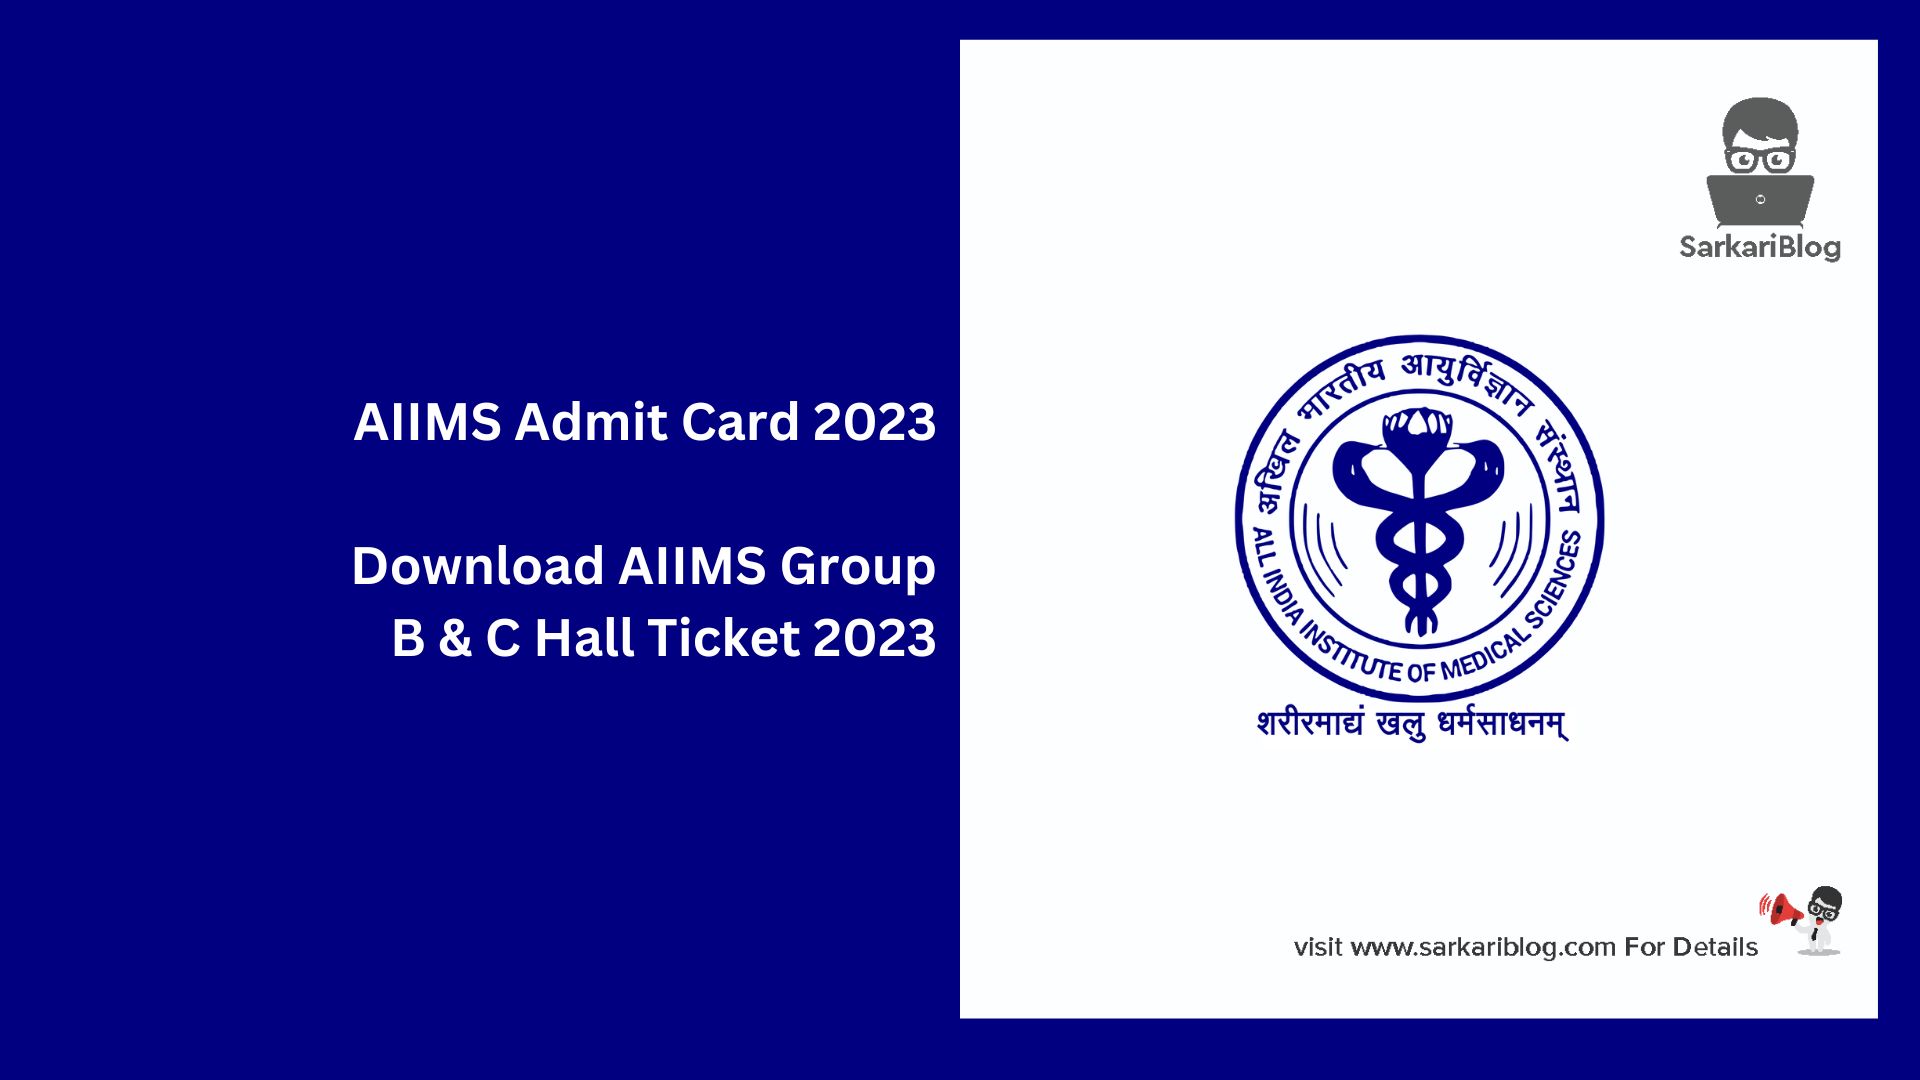 AIIMS Admit Card 2023